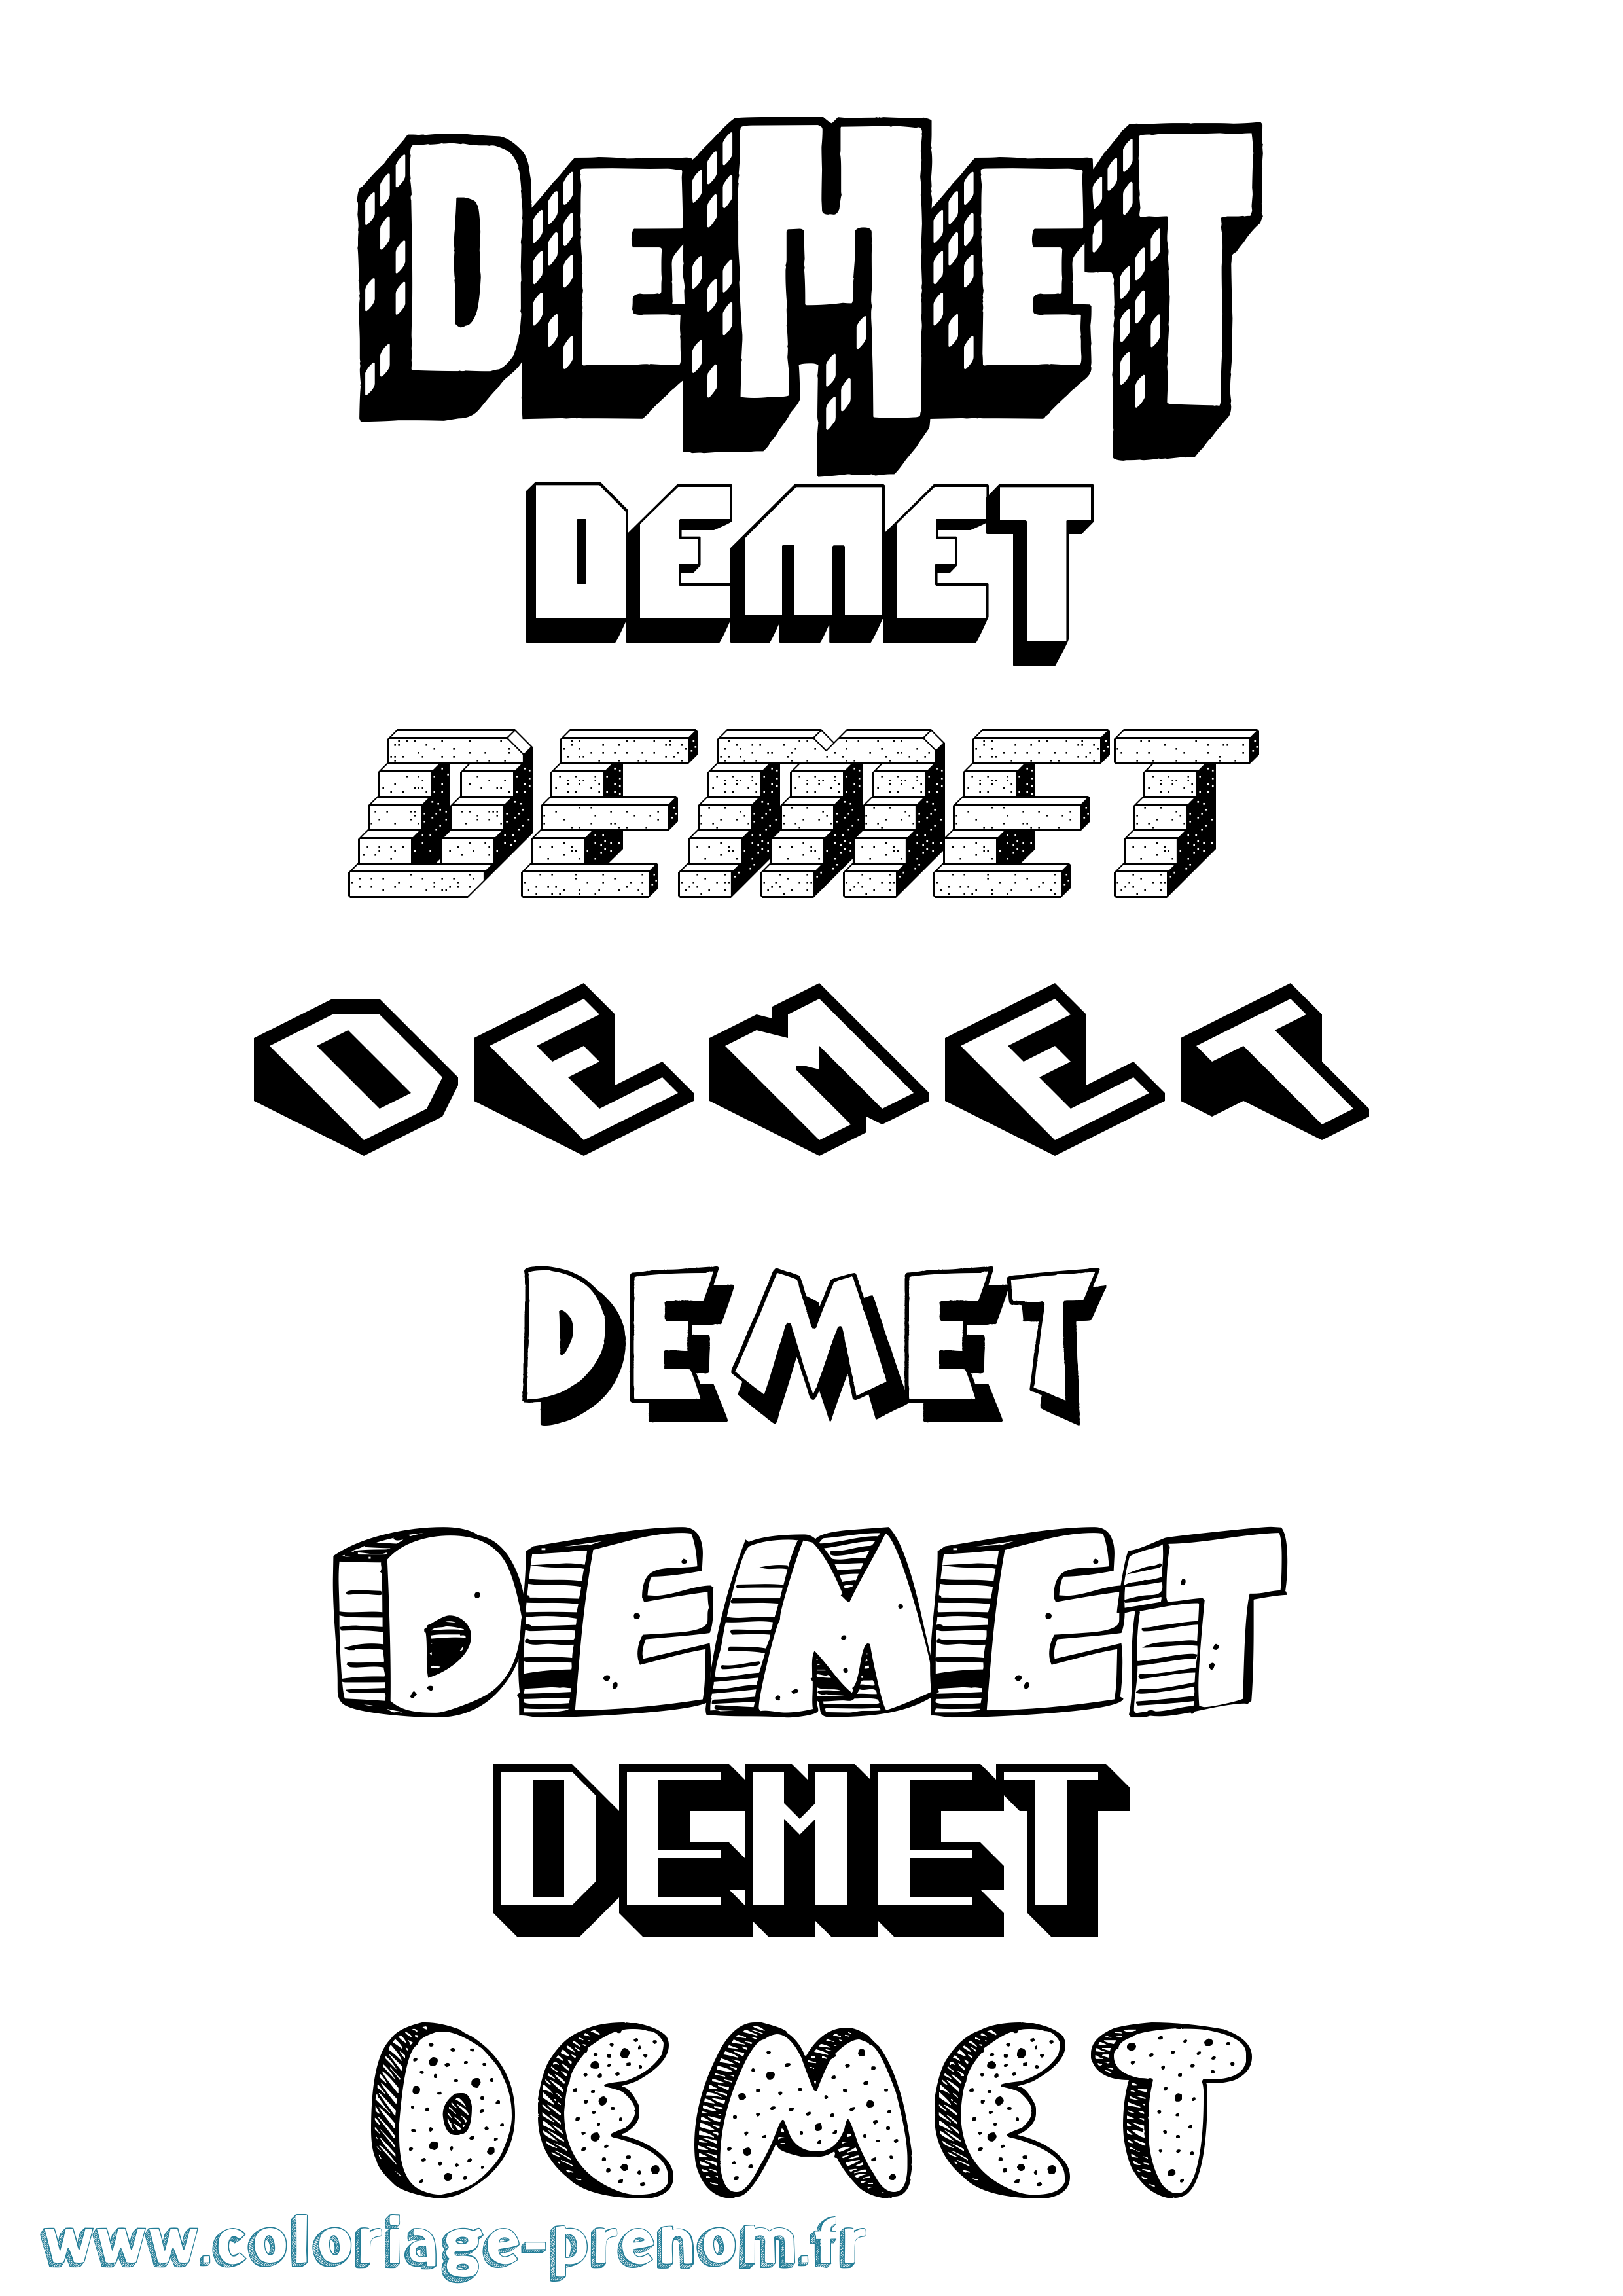 Coloriage prénom Demet Effet 3D